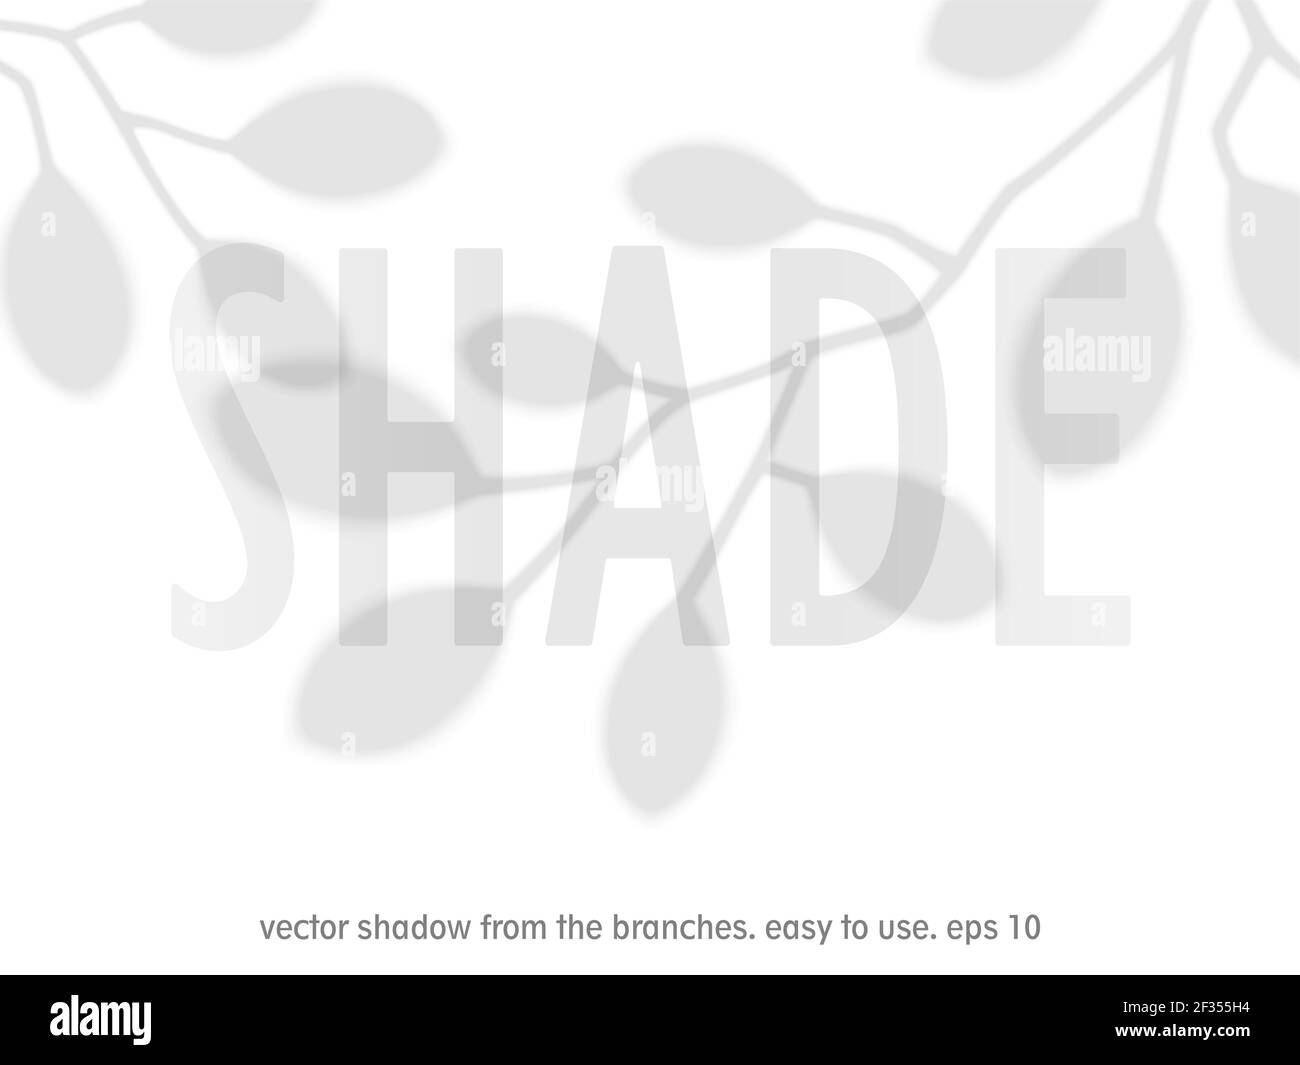 Schatten von Ästen mit Blättern. Transparente Overlay-Vorlage mit Silhouette von Blättern. Erstellt mit dem Angleichen-Werkzeug. Vektormockup Stock Vektor